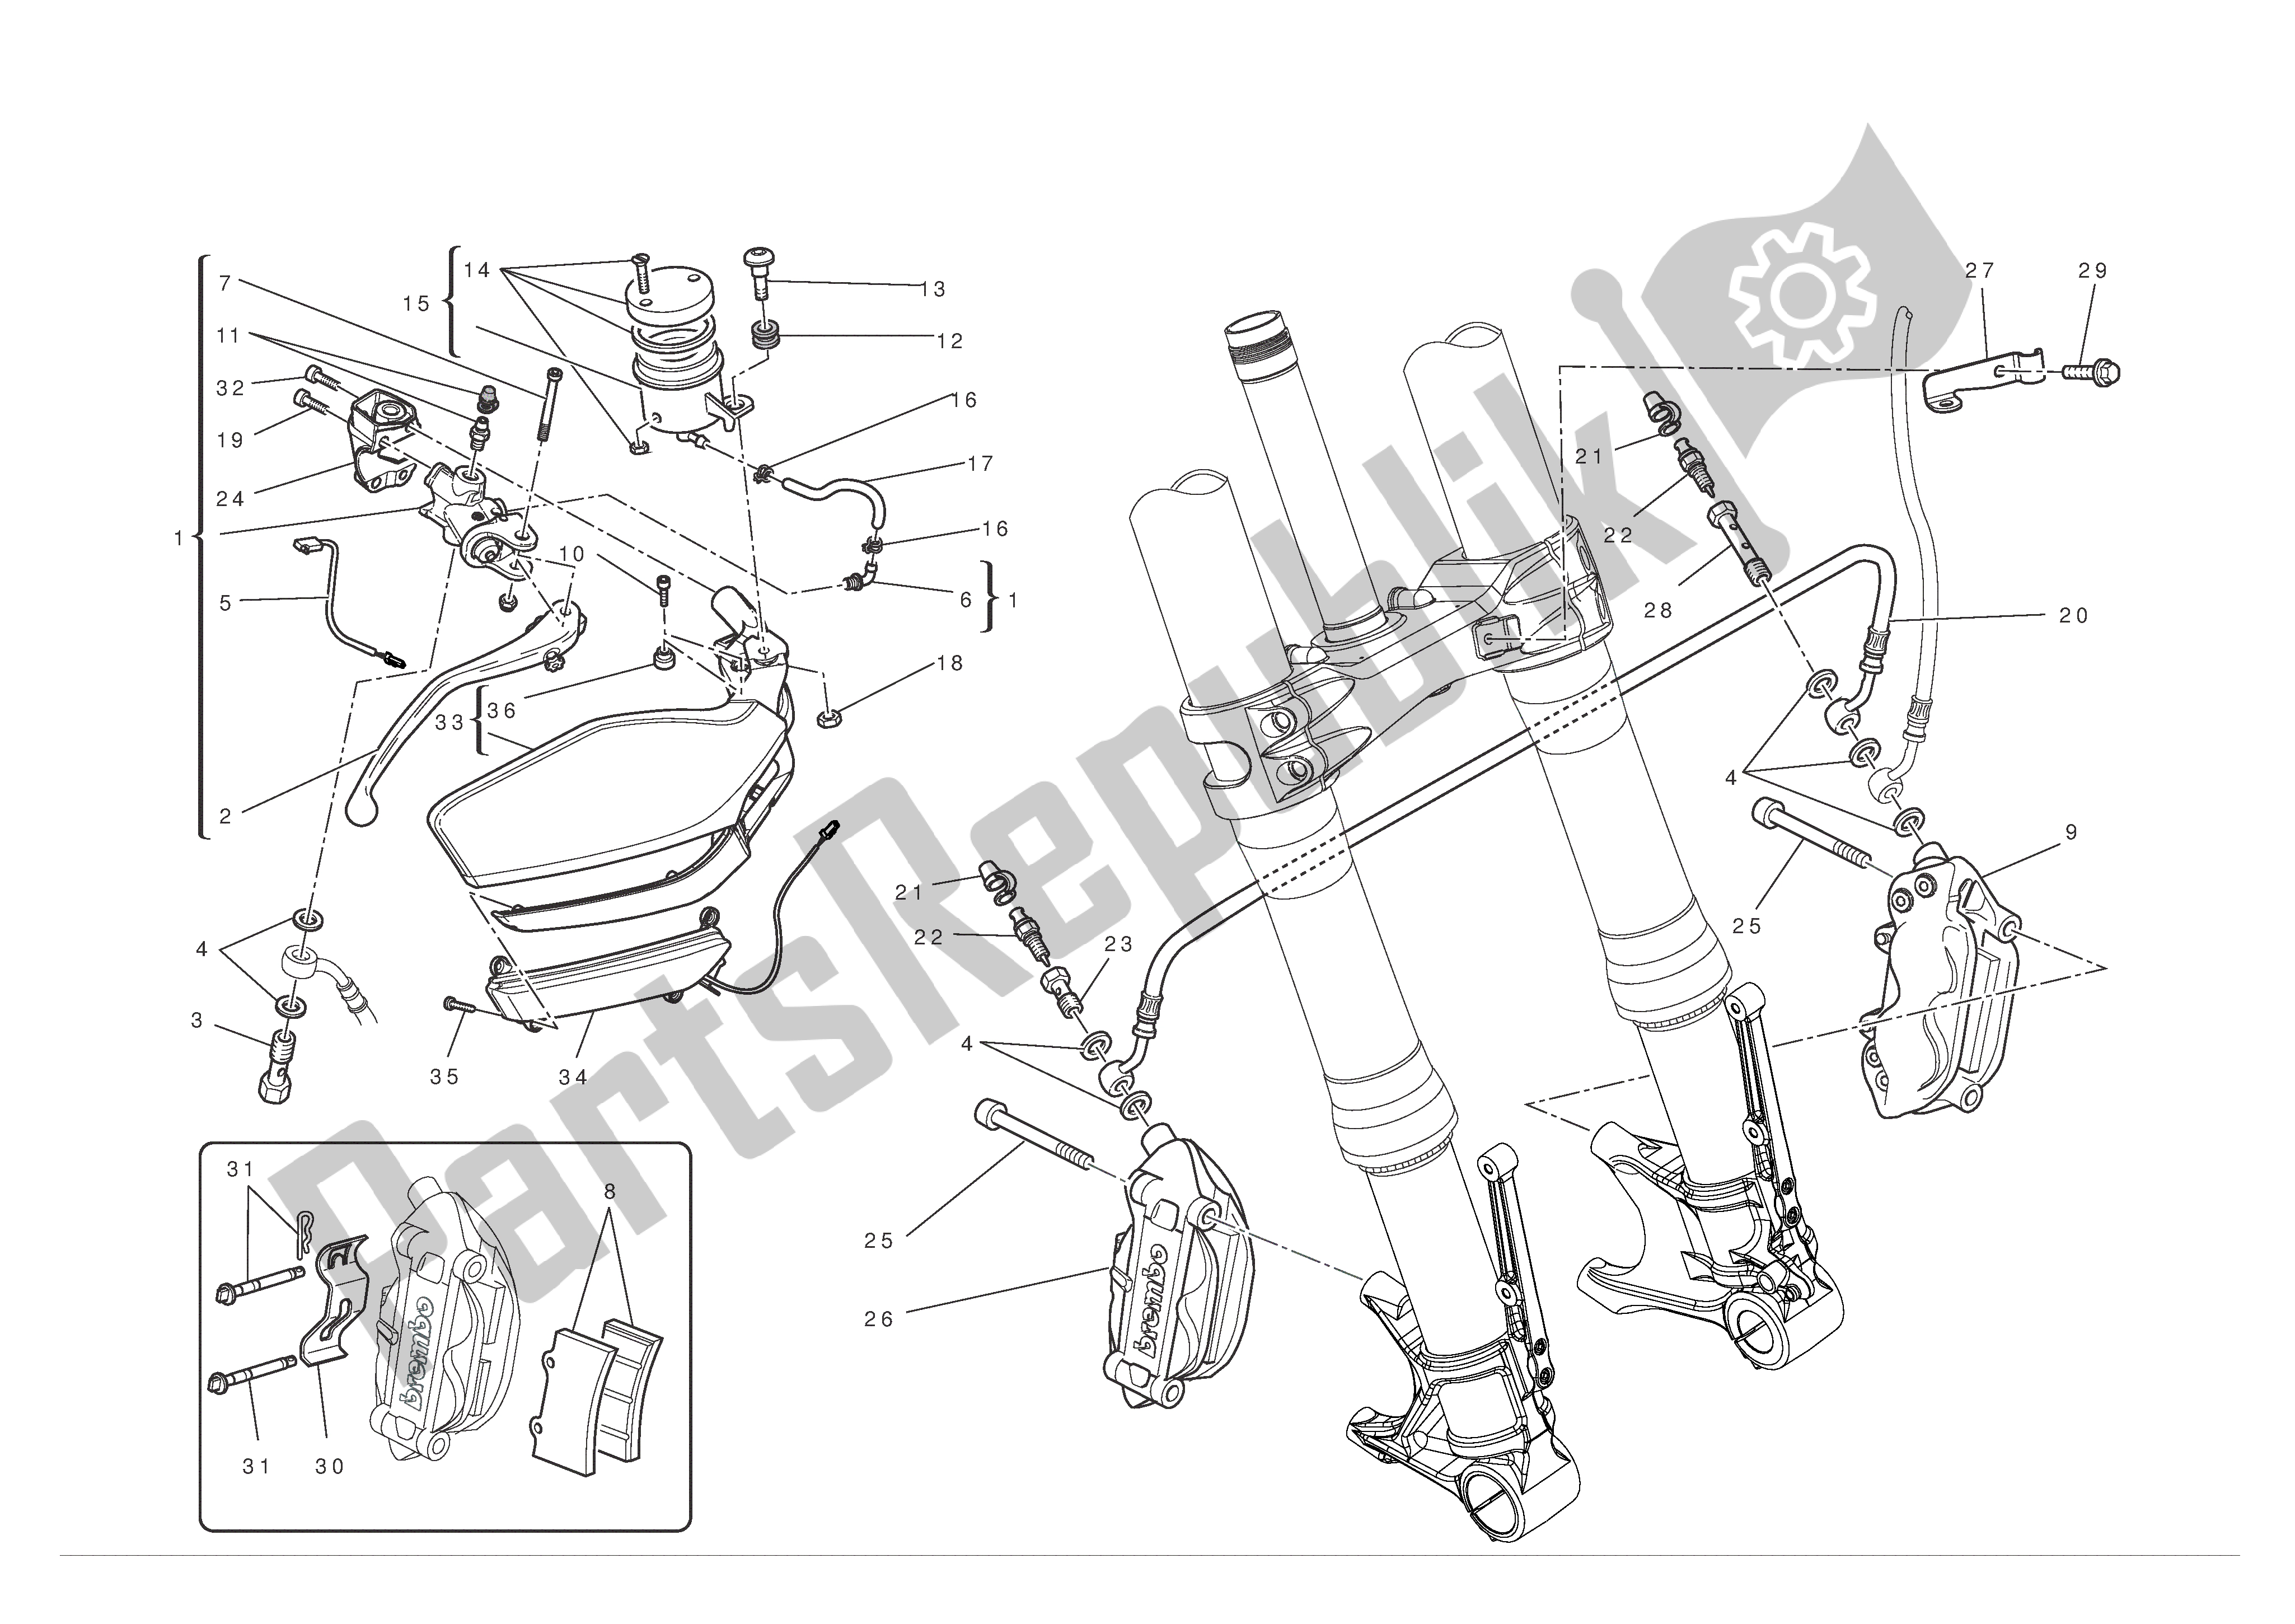 Alle onderdelen voor de Voor Rem van de Ducati Multistrada S ABS 1200 2010